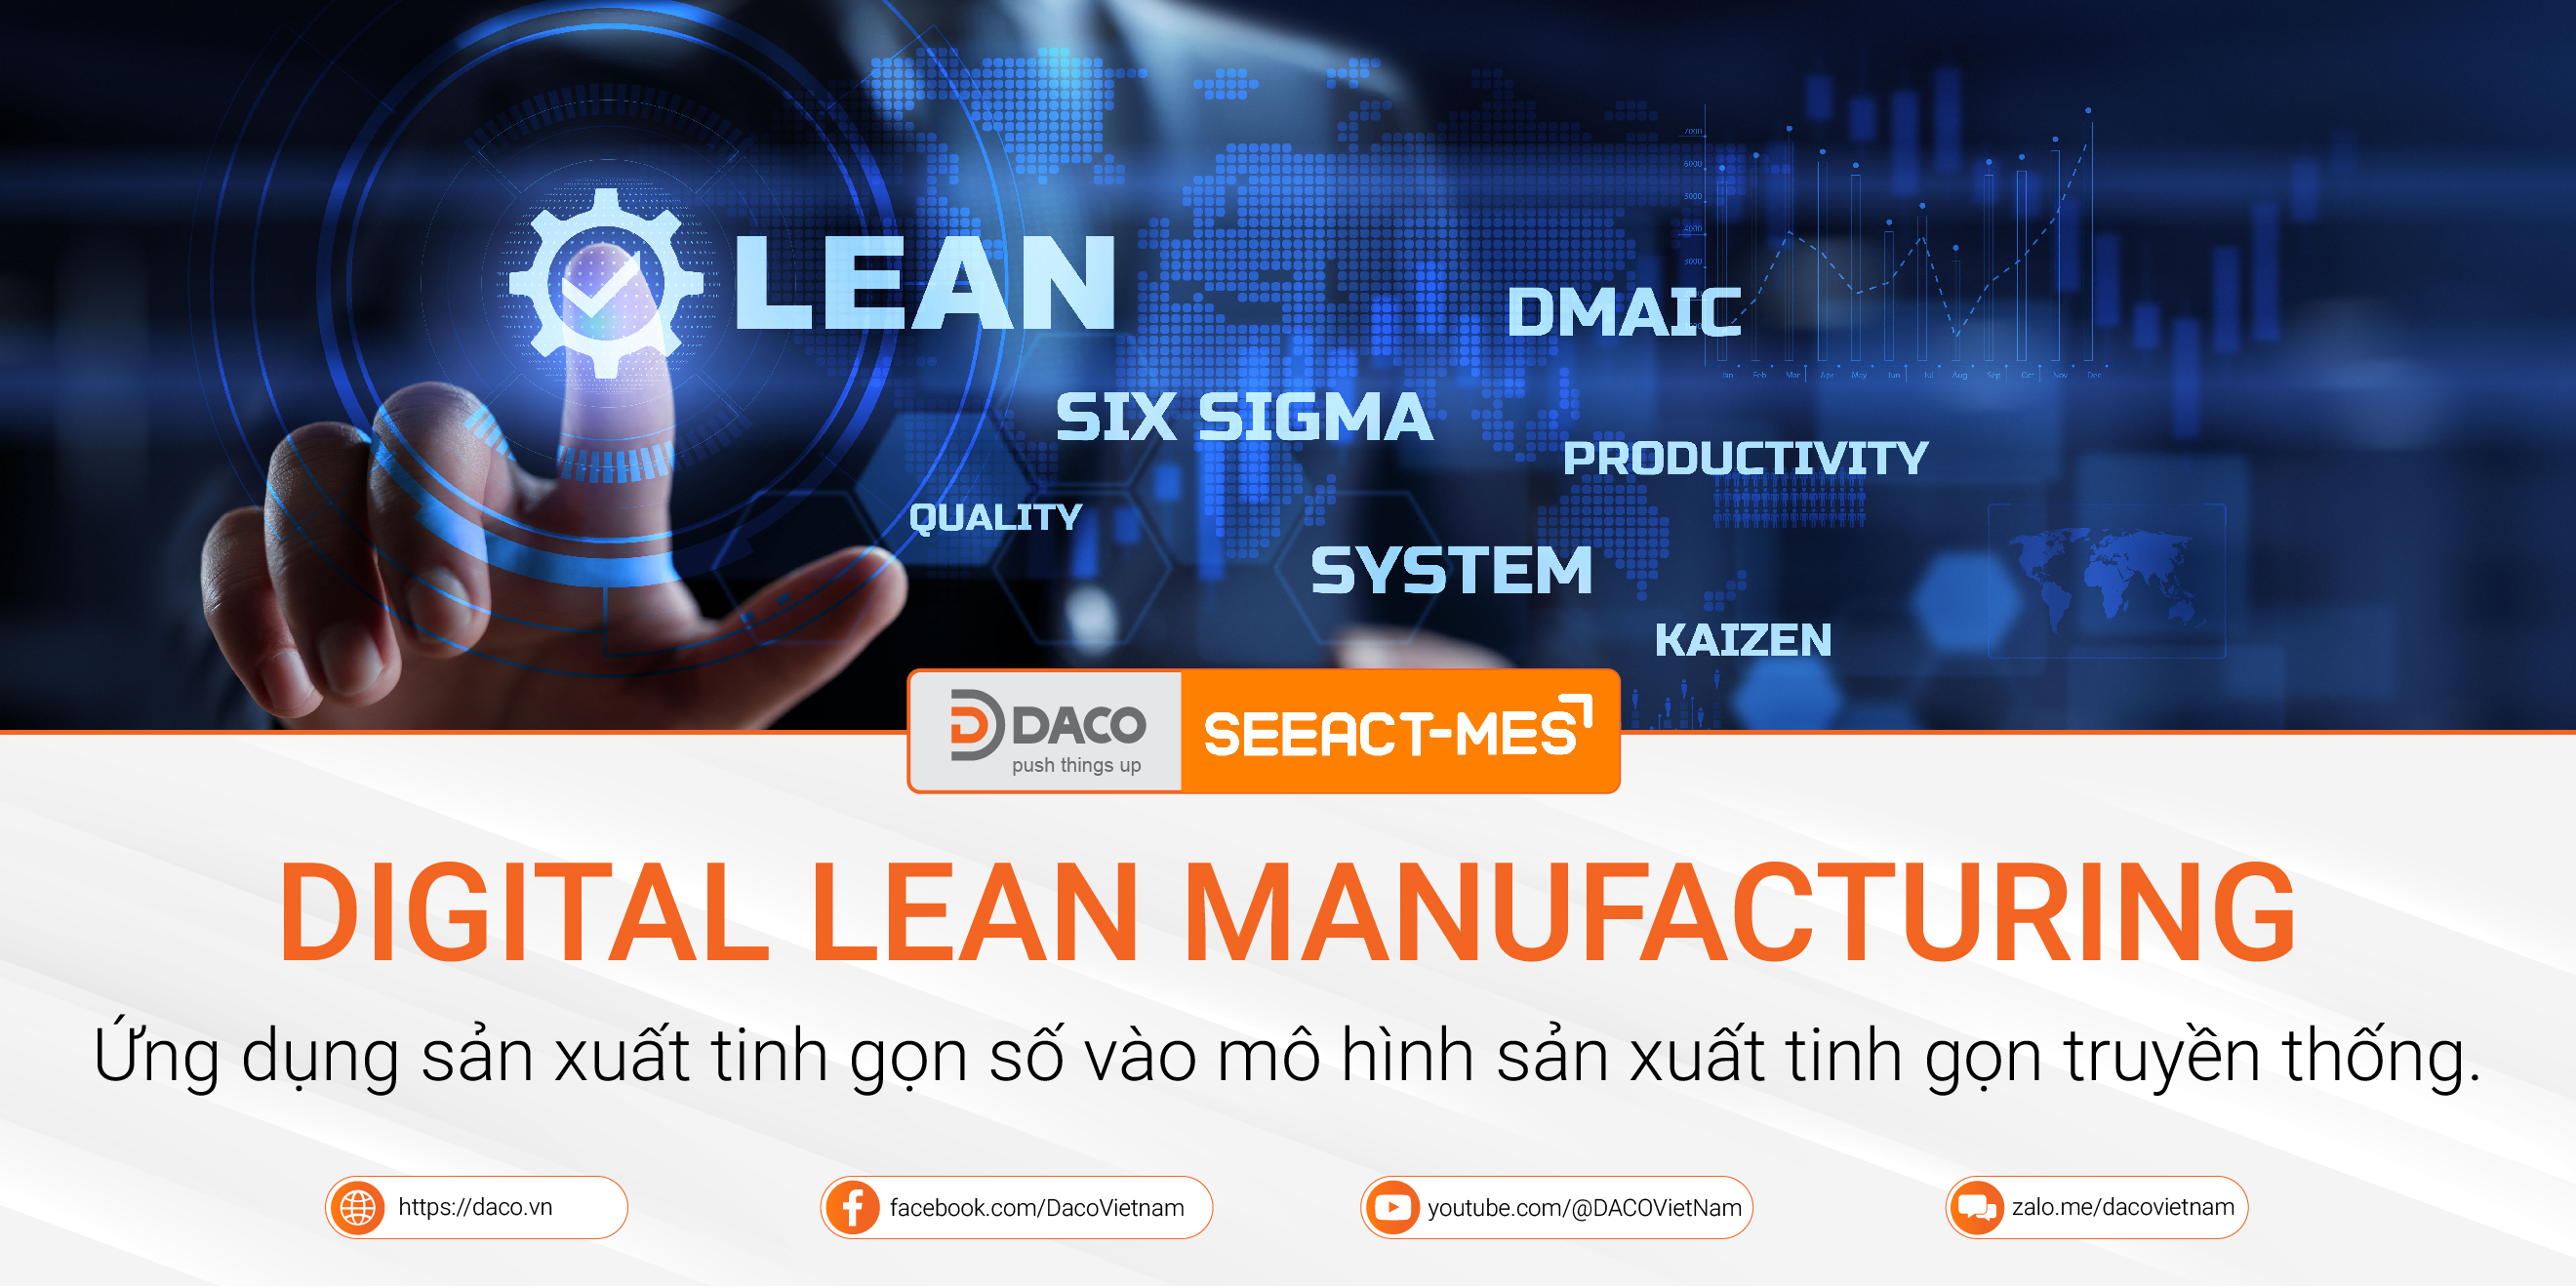 Digital Lean Manufacturing - Ứng dụng sản xuất tinh gọn số vào mô hình sản xuất tinh gọn truyền thống